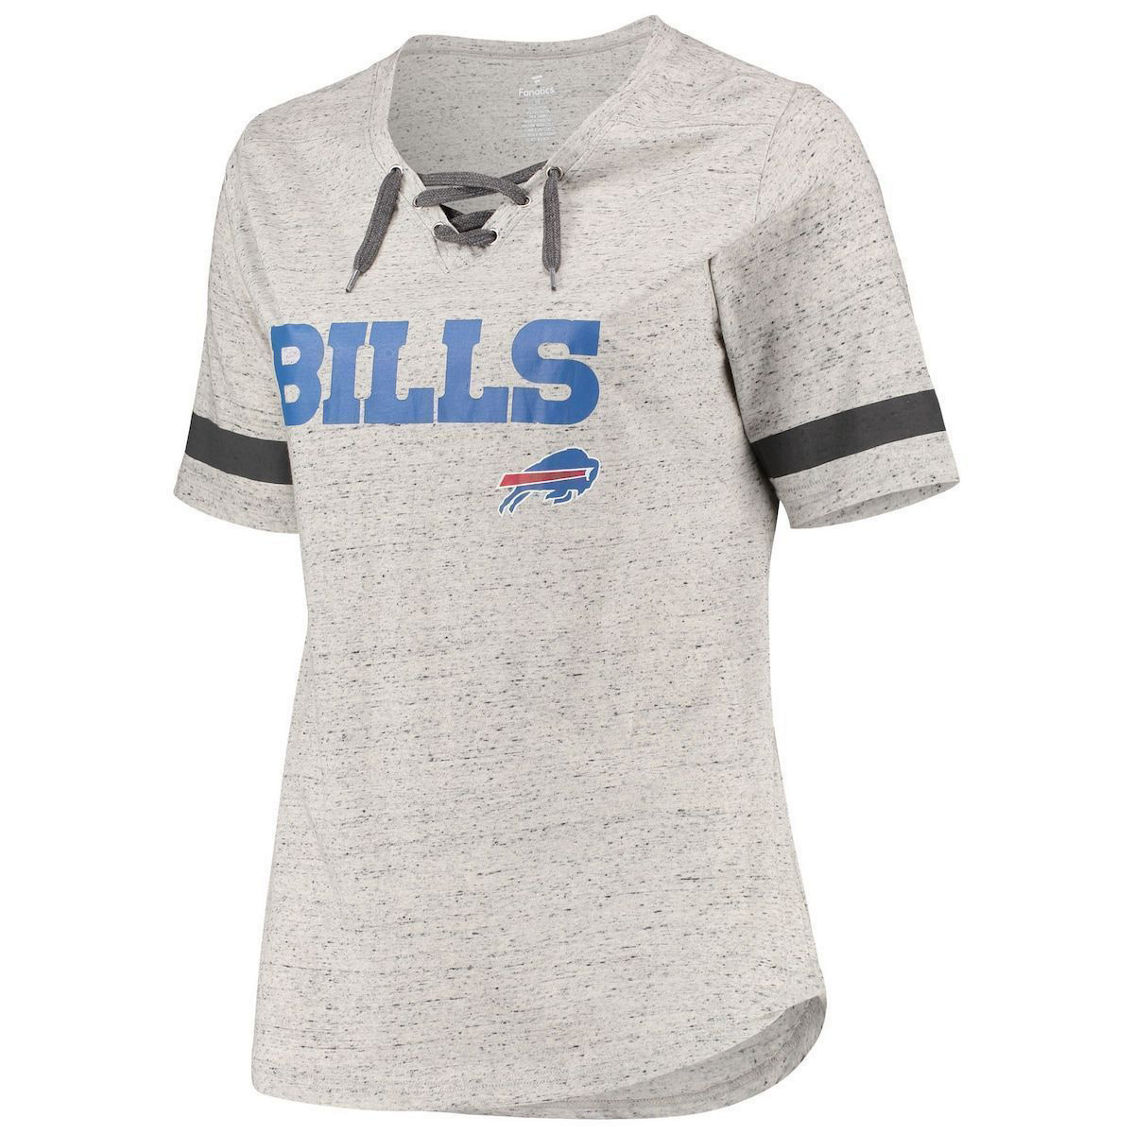 Fanatics Women's Heathered Gray Buffalo Bills Plus Size Lace-Up V-Neck T-Shirt - Image 3 of 4